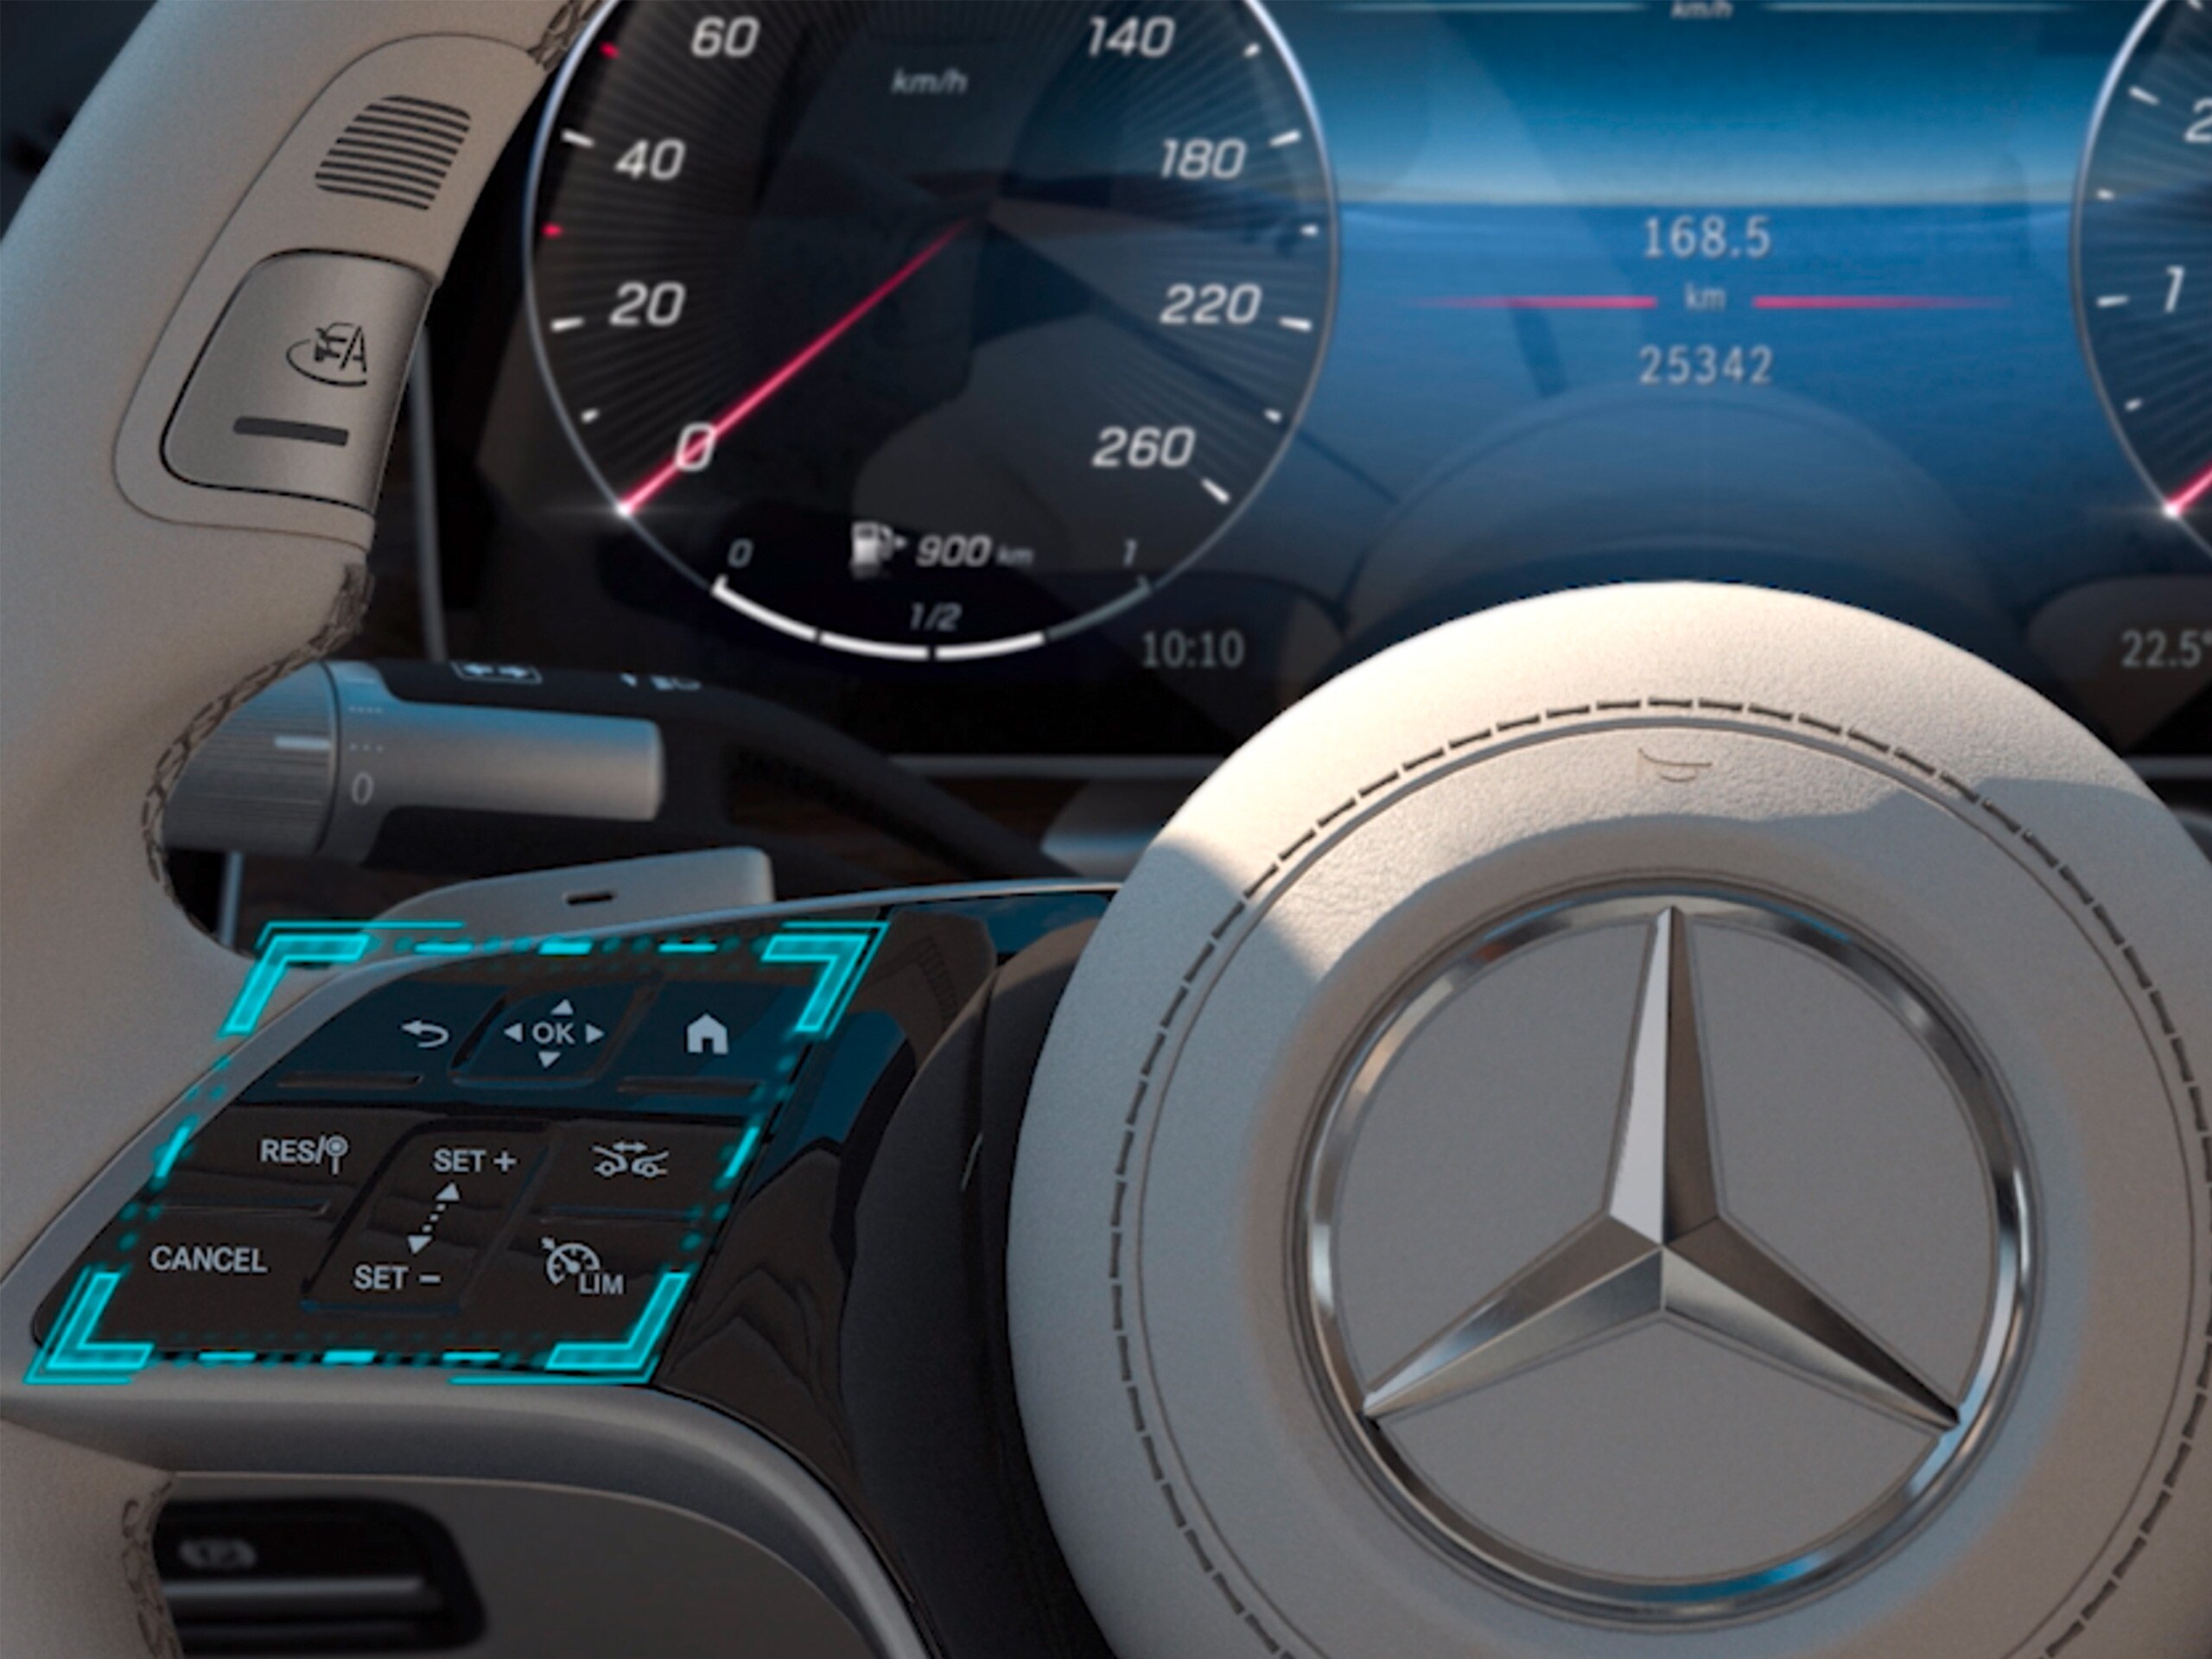 此影片展示 Mercedes-Benz C-Class 轎車的 MBUX 觸控式操作概念的功能。